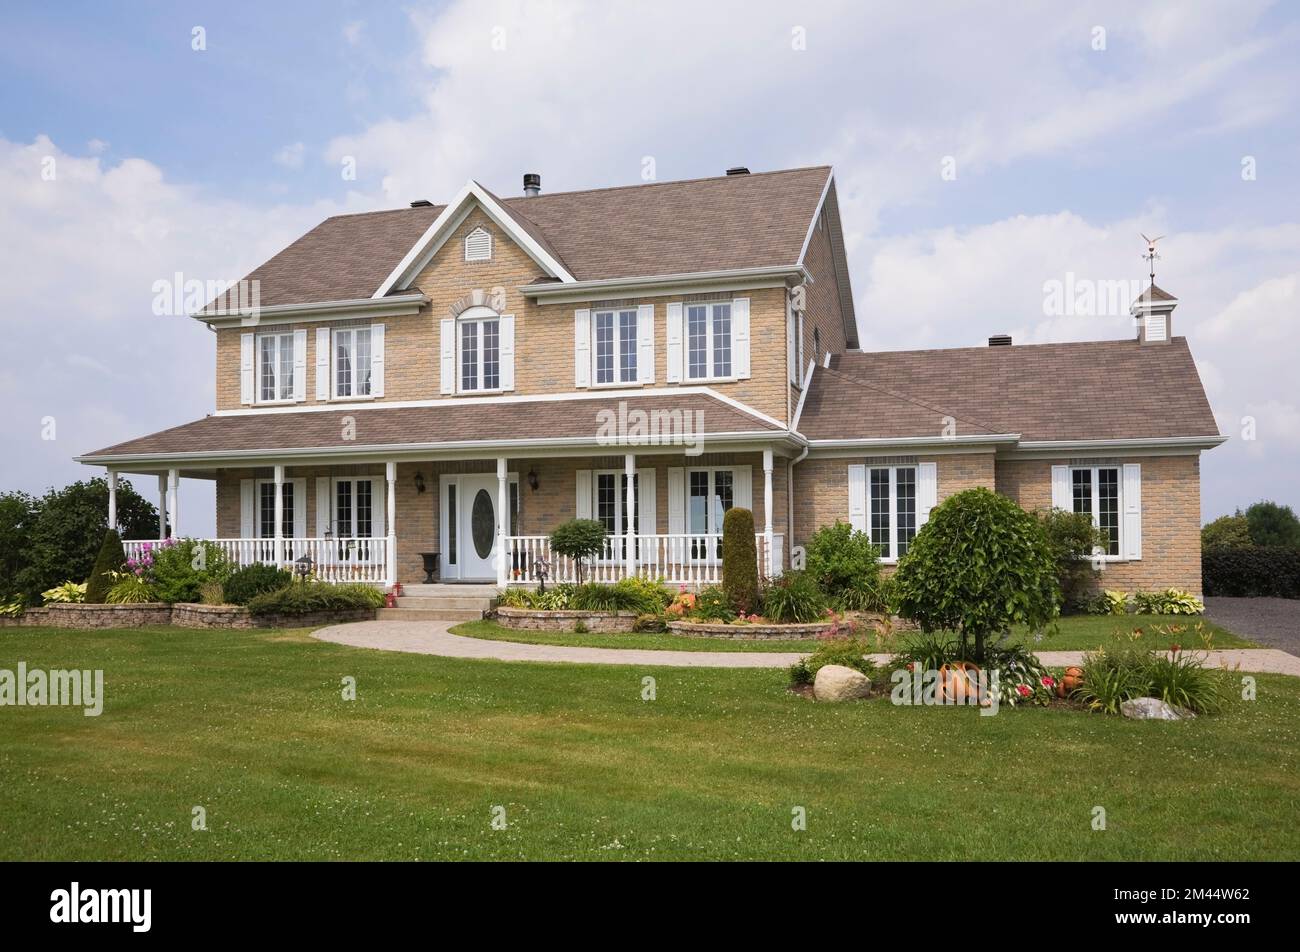 Brique nuancée beige et tan avec garniture blanche maison de style cottage en été. Banque D'Images